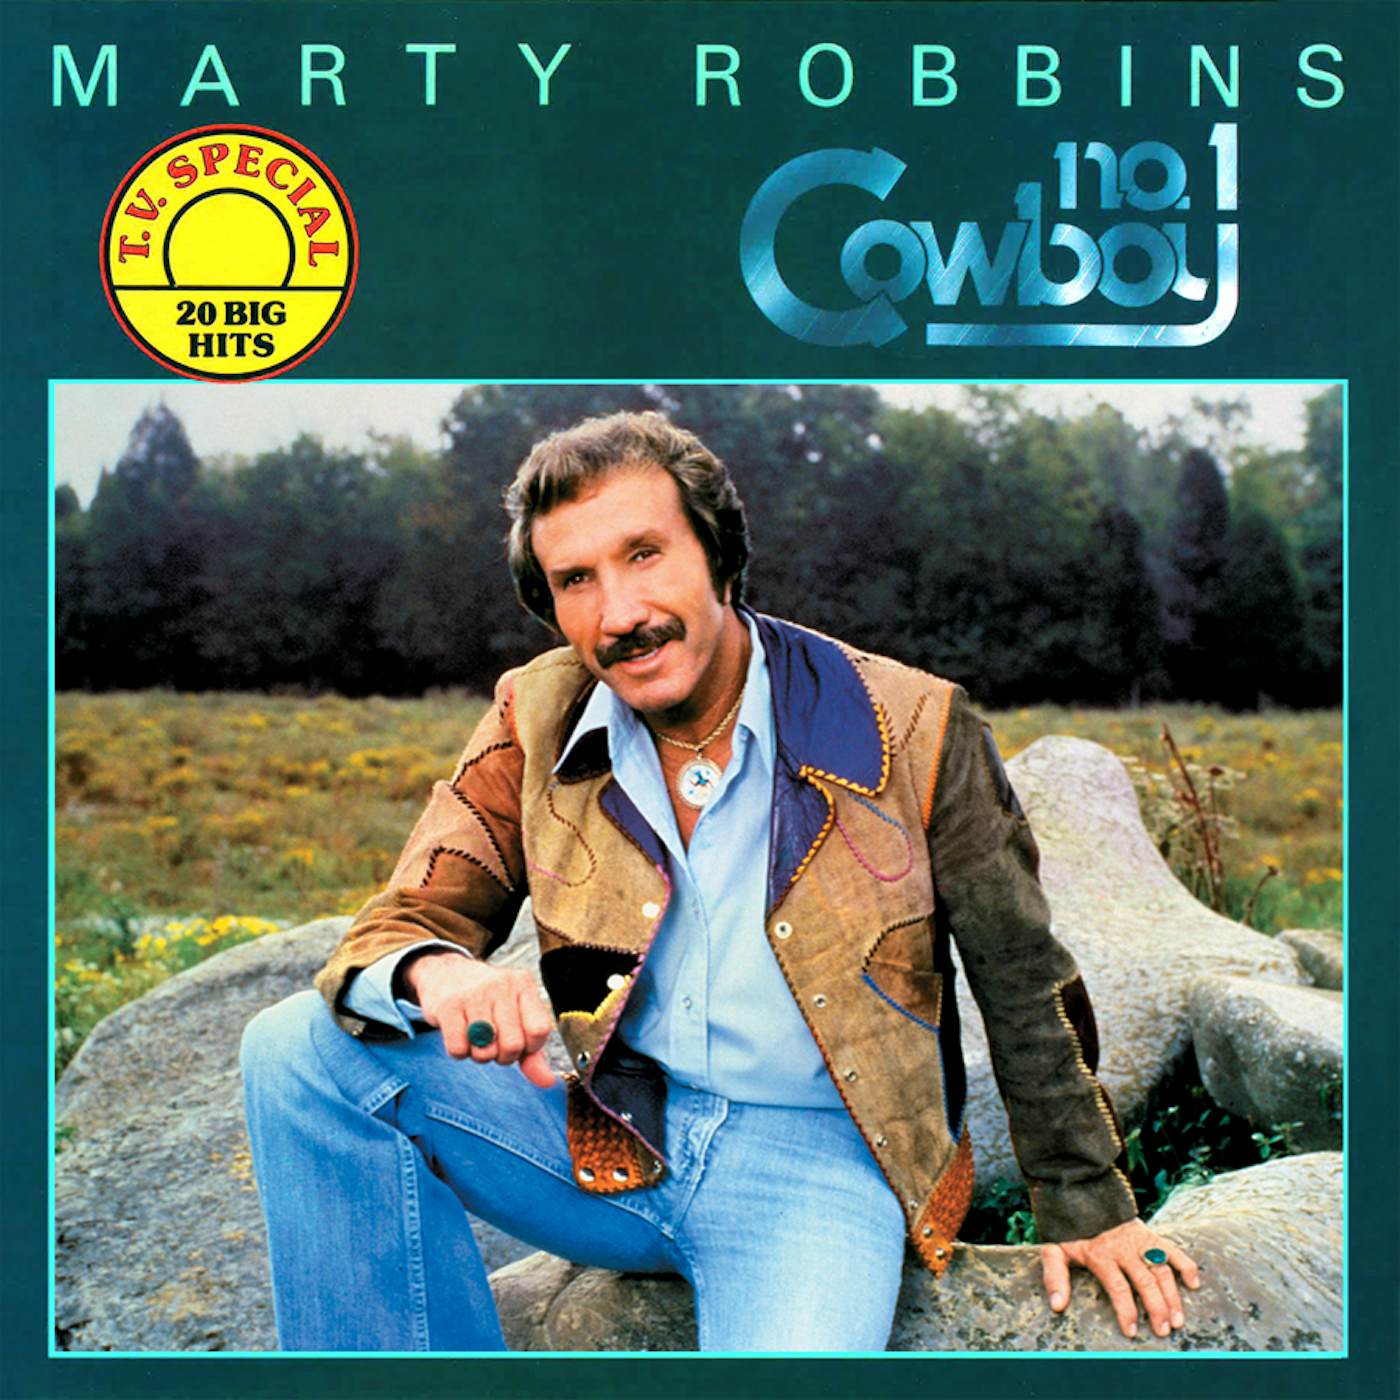 Marty Robbins #1 COWBOY Vinyl Record